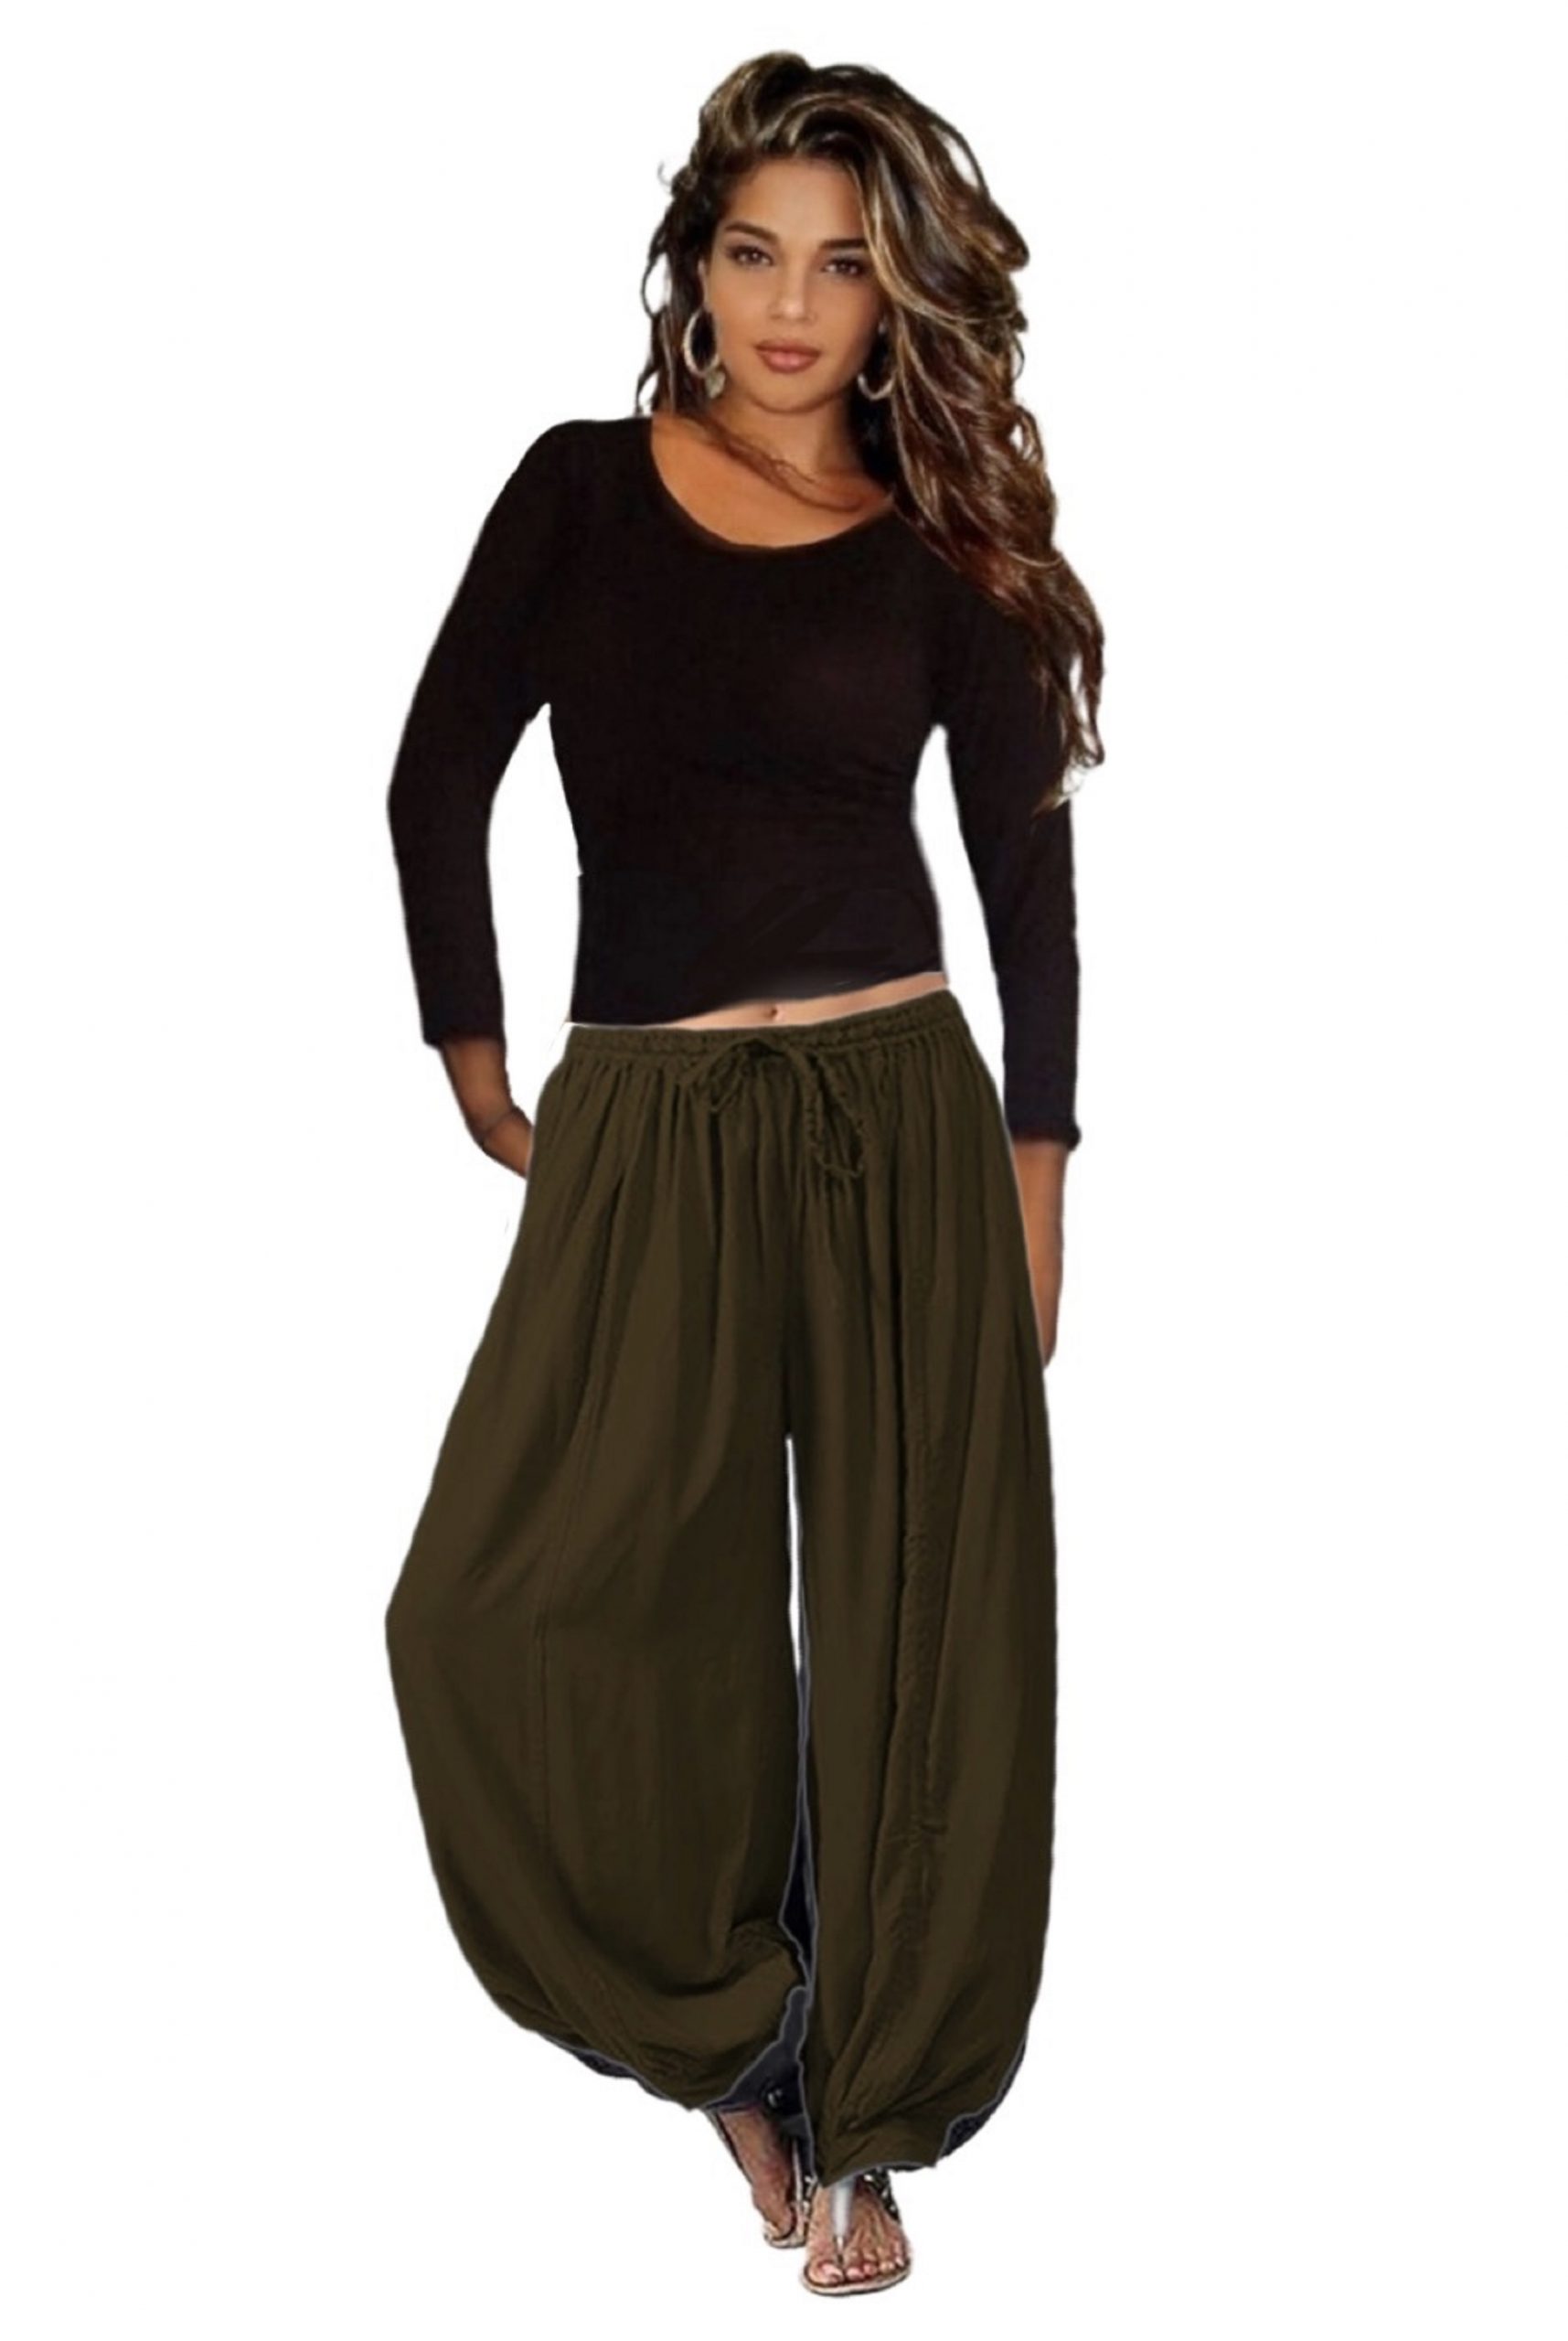 Harem Pants Online - Buy Harem Pants for Women in India | InWeave-cheohanoi.vn